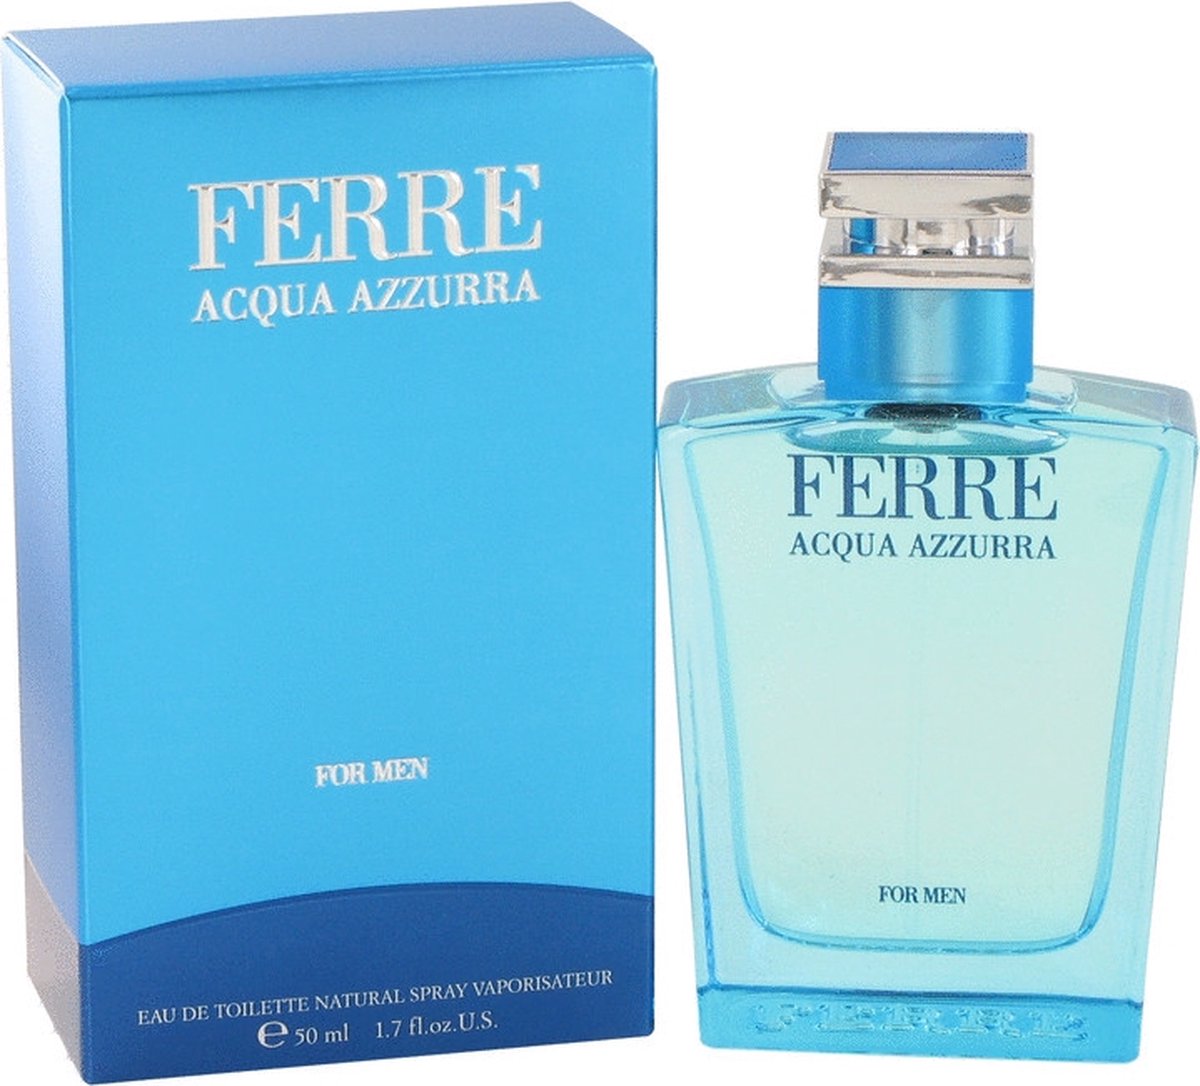 Ferre Acqua Azzurra by Gianfranco Ferre 50 ml - Eau De Toilette Spray